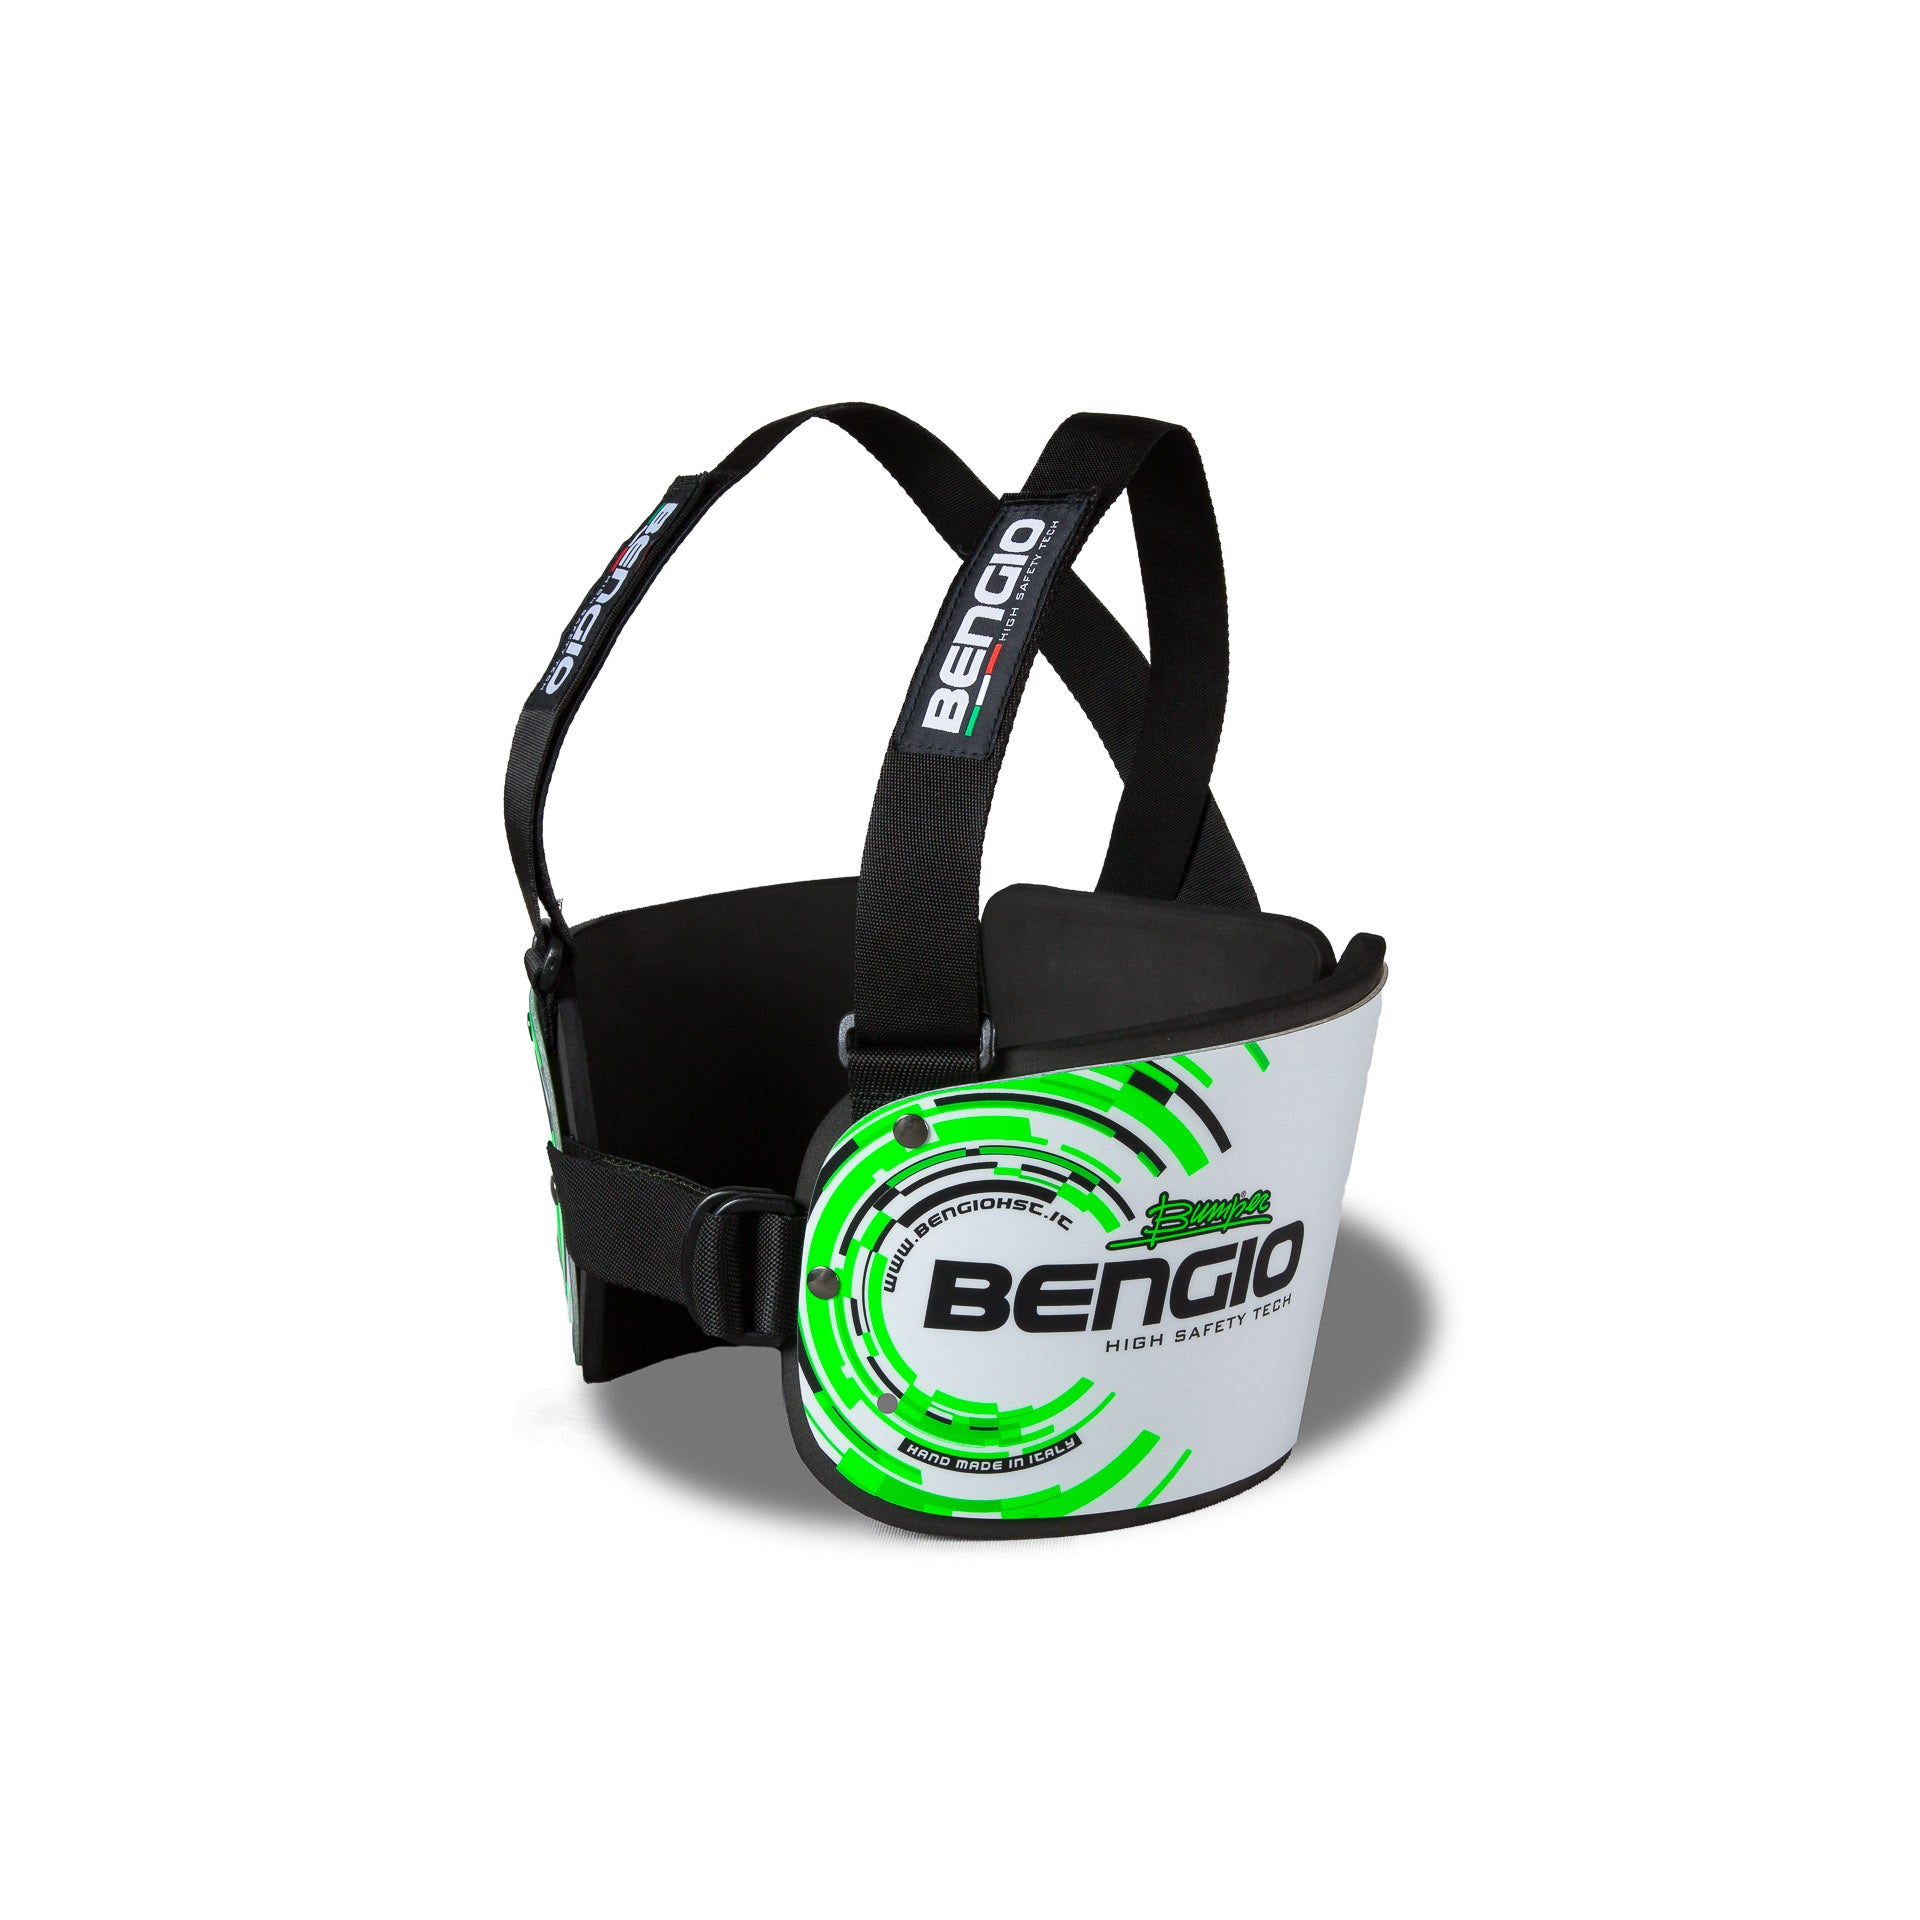 BENGIO STDXSWG BUMPER Standard Захист ребер для картингу, білий/зелений, розмір XS Photo-1 